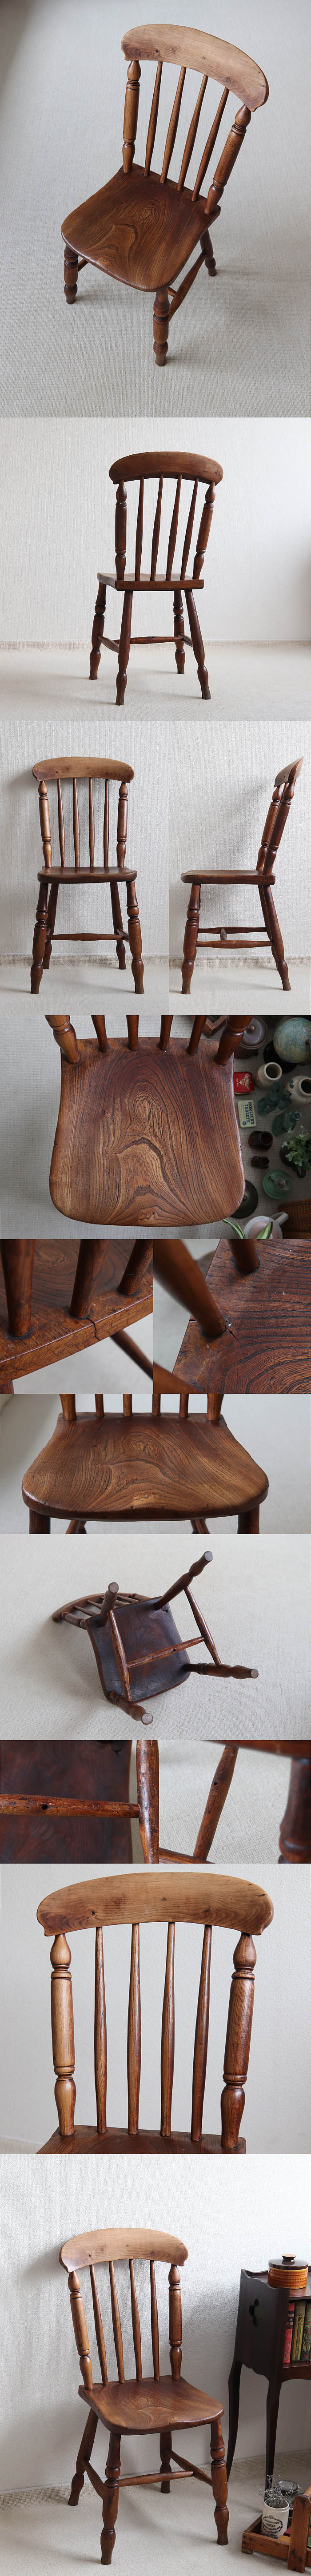 イギリス アンティーク キッチンチェア 木製椅子 カントリー 古木 店舗